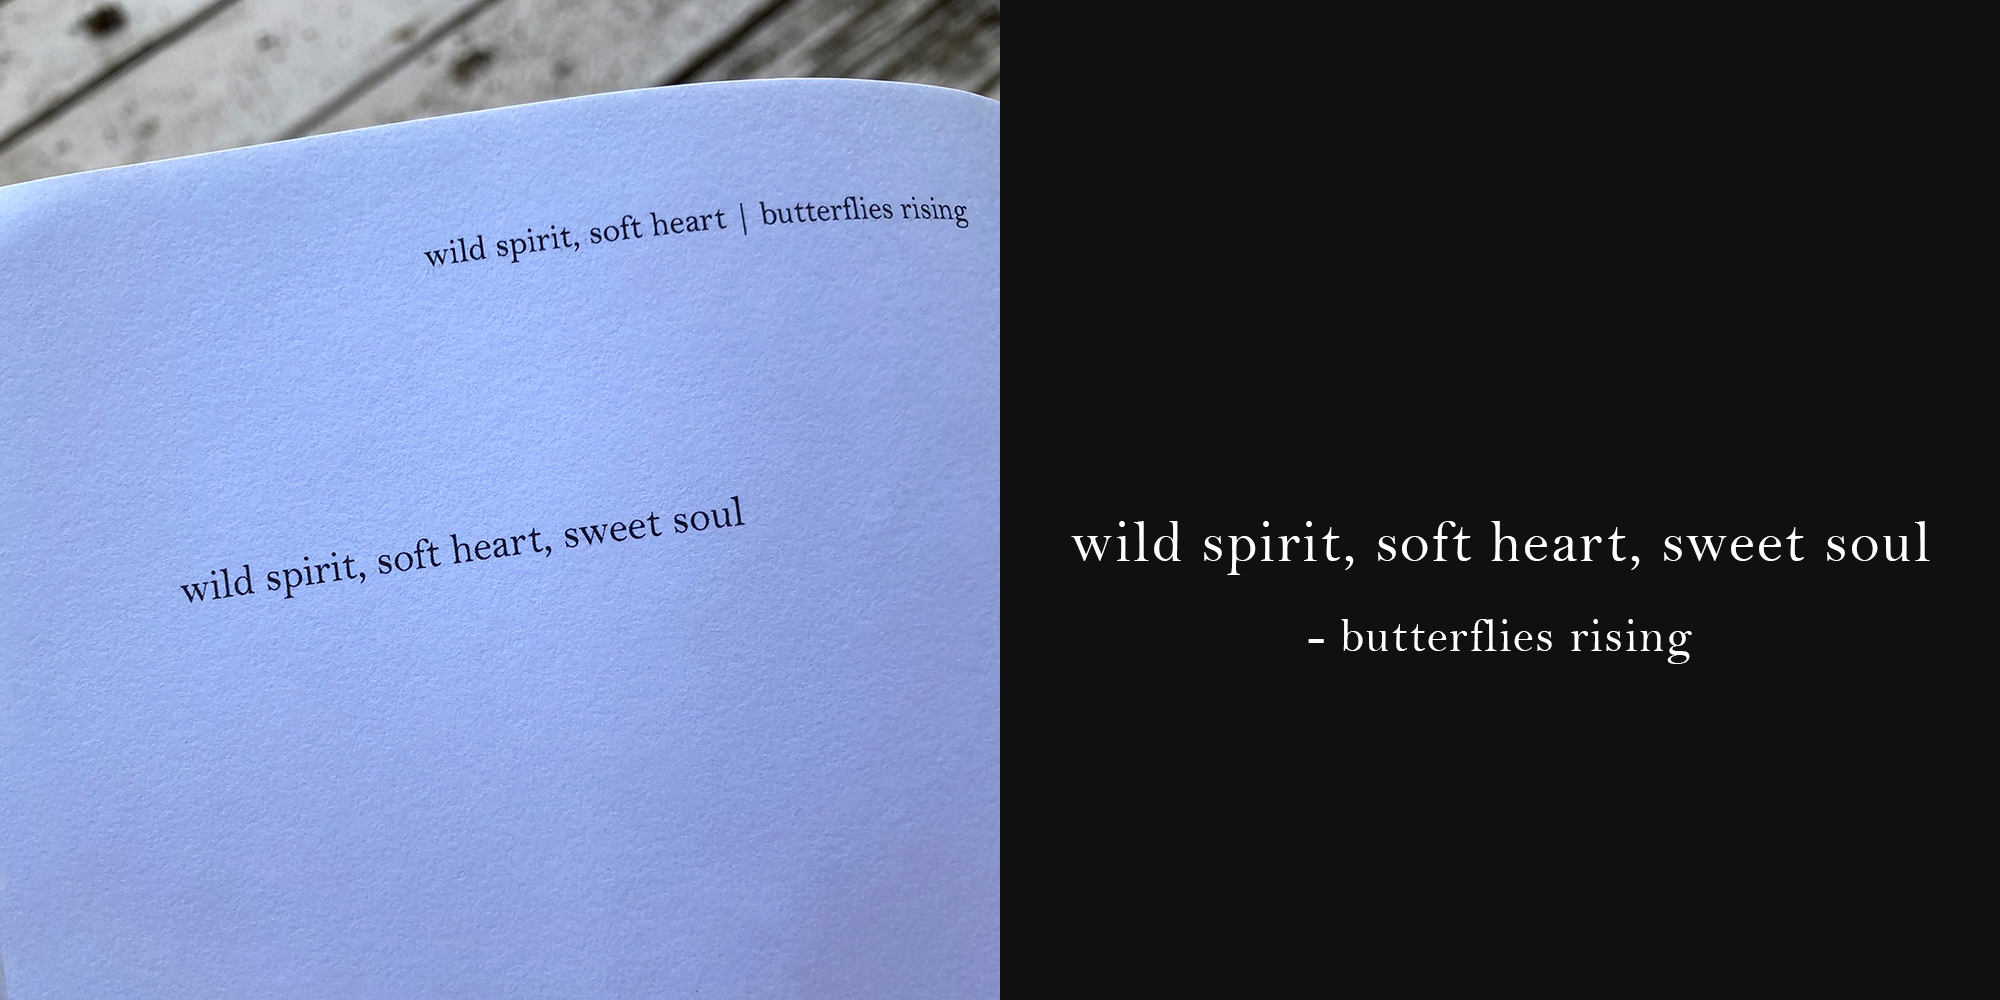 wild spirit, soft heart, sweet soul - butterflies rising